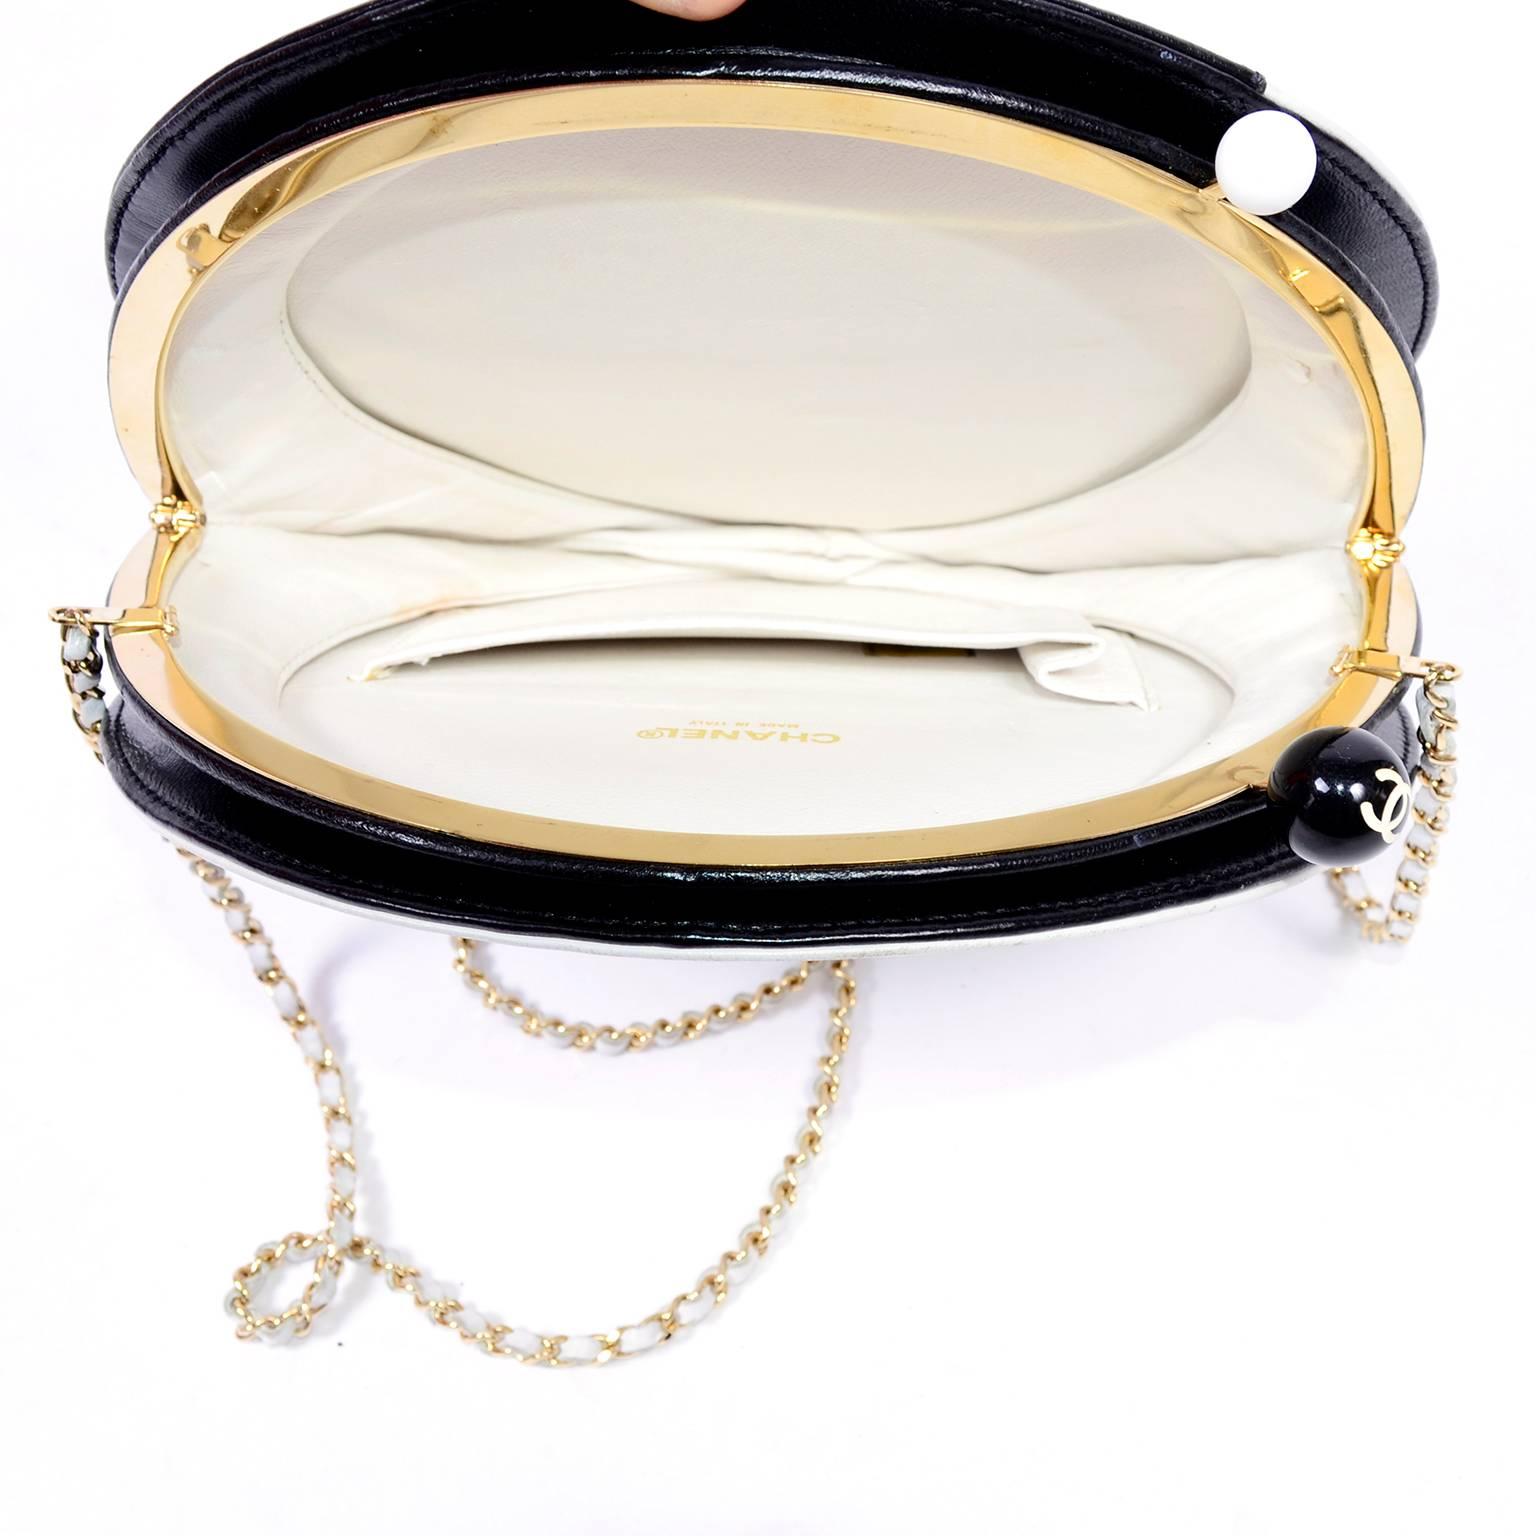 Seltene Chanel runde schwarz-weiße Lammfell-Handtasche Circle Umhängetasche oder Clutch Damen